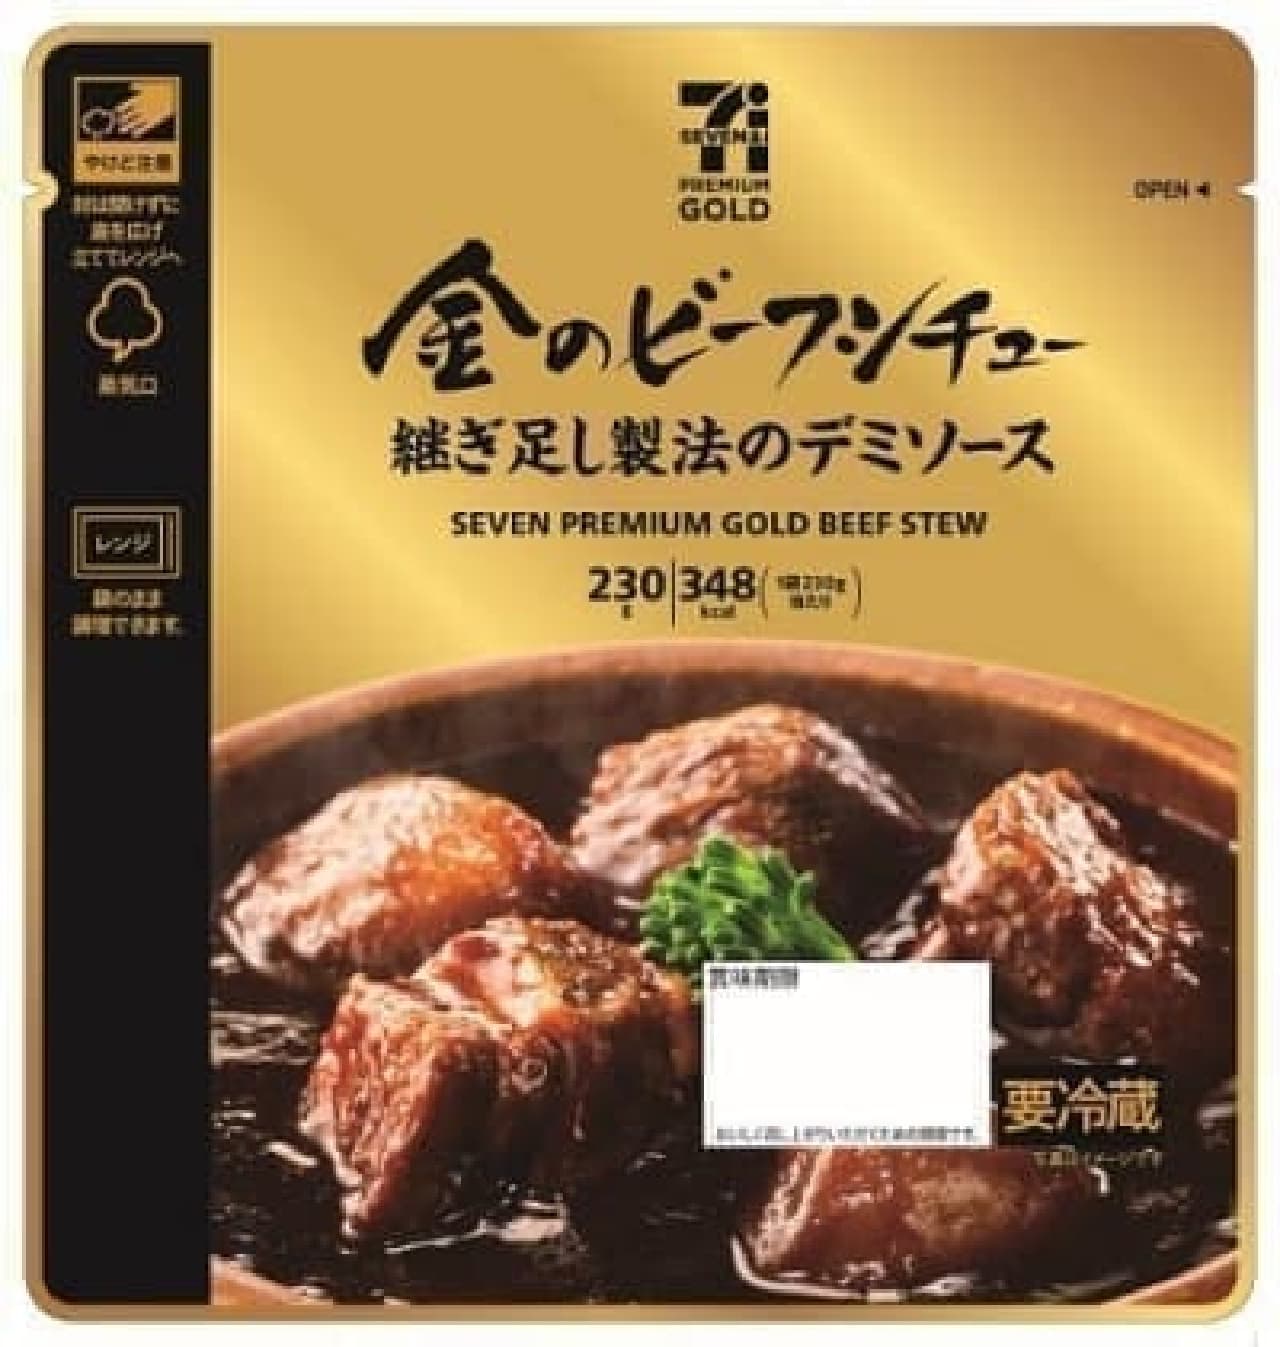 7-ELEVEN Premium Gold Gold Beef Stew